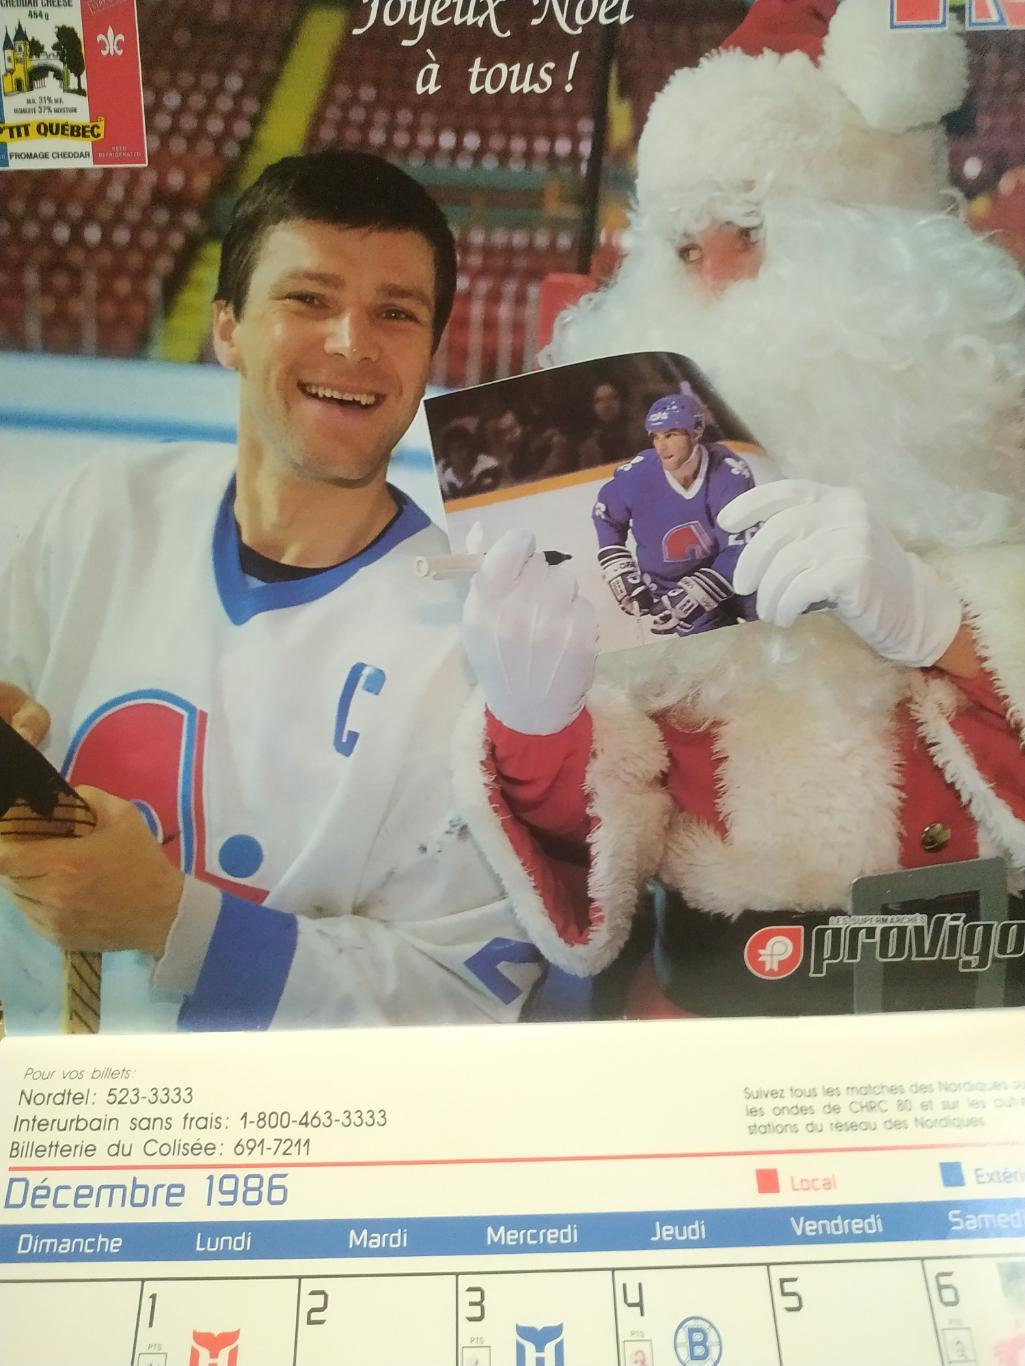 ХОККЕЙ КАЛЕНДАРЬ НХЛ КВЕБЕК НОРДИКС 1987 NHL LES NORDIQUES OFFICIAL CALENDAR 1